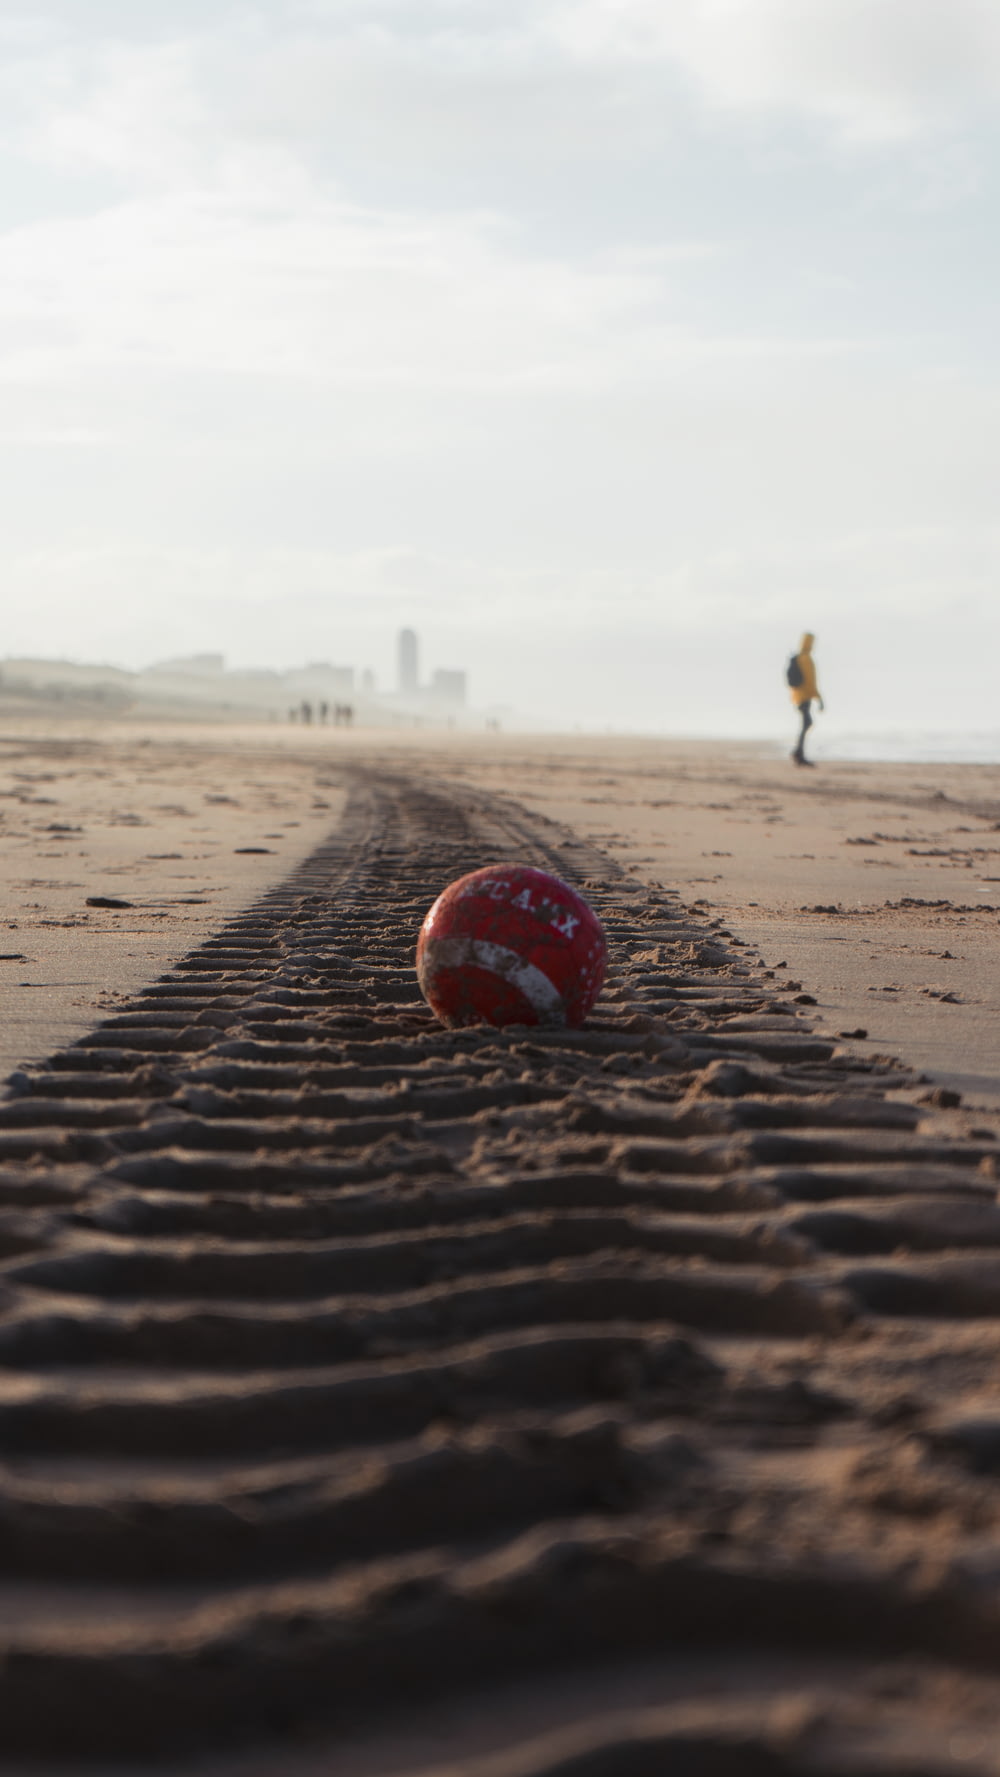 pallone da calcio rosso e bianco su sabbia marrone durante il giorno